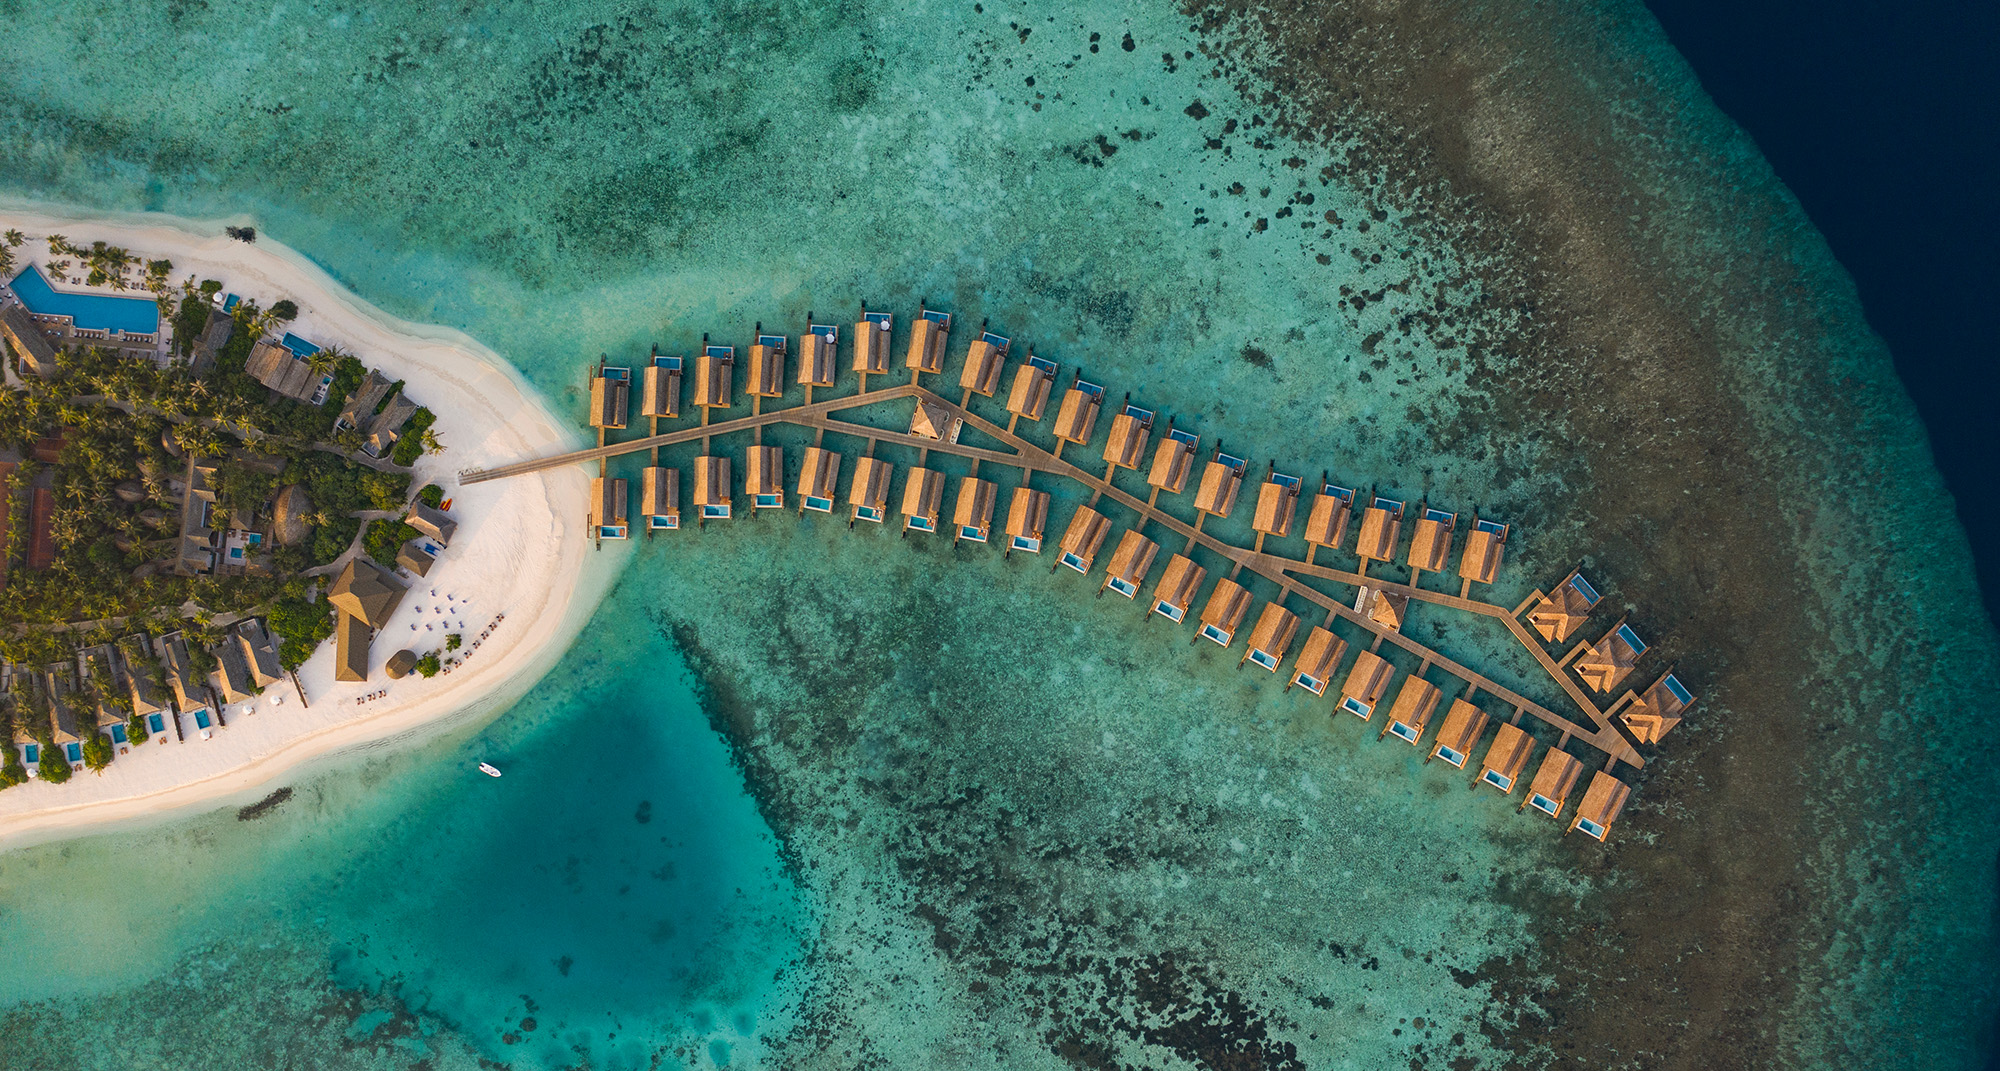 Pünktlich zum Saisonbeginn im Oktober 2022 eröffnet die italienische Emerald Collection ihr zweites Inselresort im Raa-Atoll: Das luxuriöse Emerald Faarufushi Resort & Spa empfängt seine Gäste mit ganzheitlichen Spa-Erlebnissen, mediterraner Kochkunst und vielem mehr. Bella Italia im Indischen Ozean!